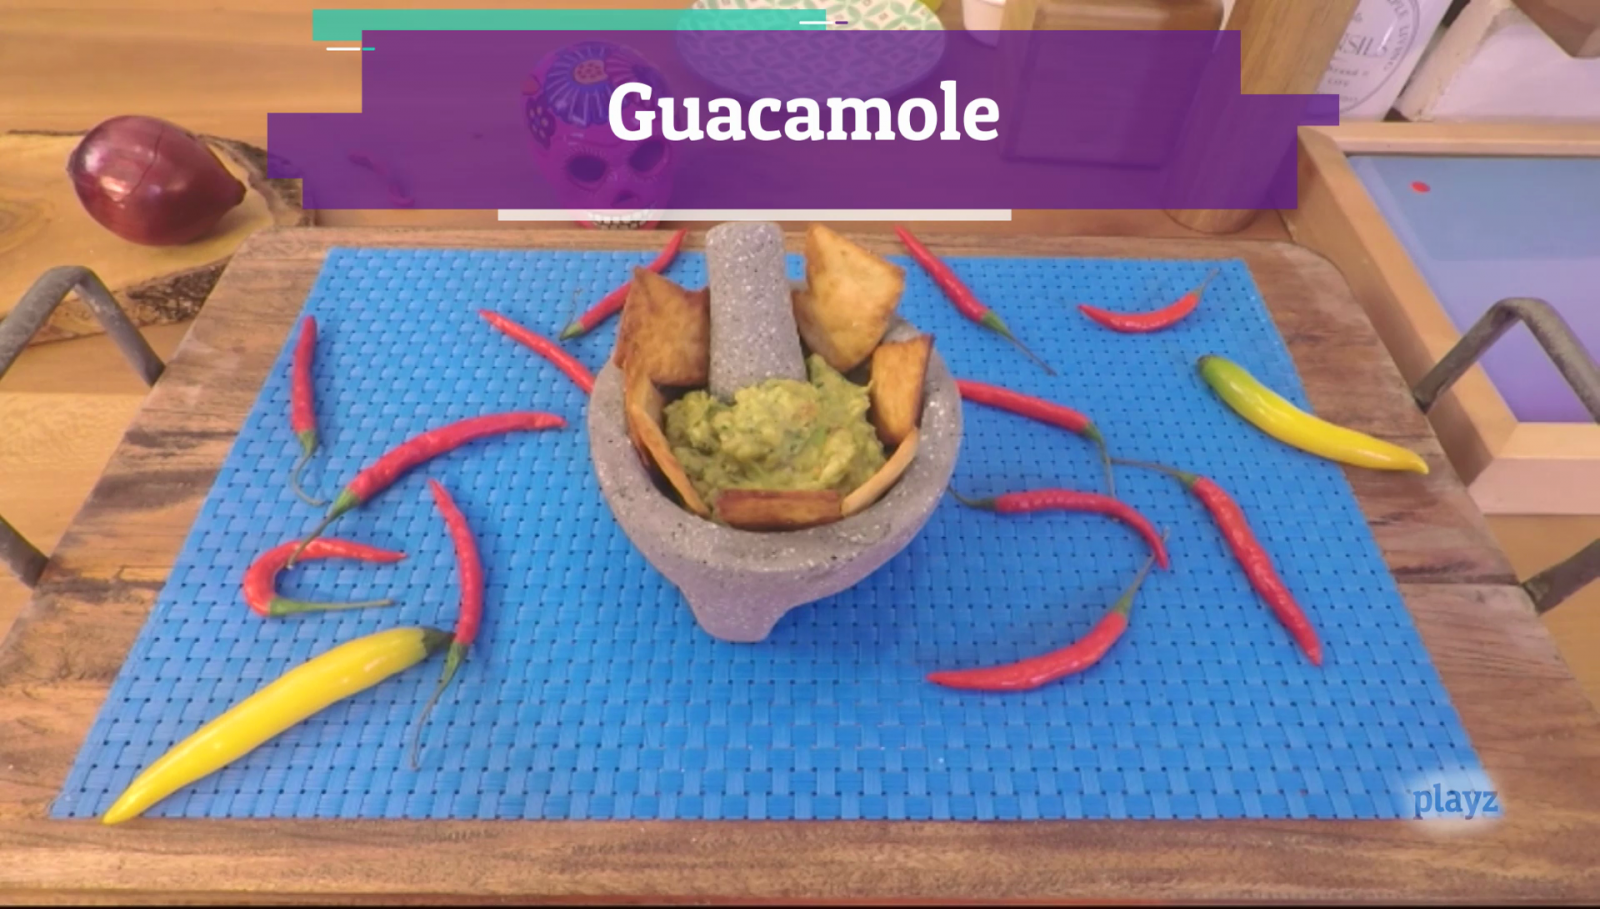 Playchez - Receta: guacamole casero